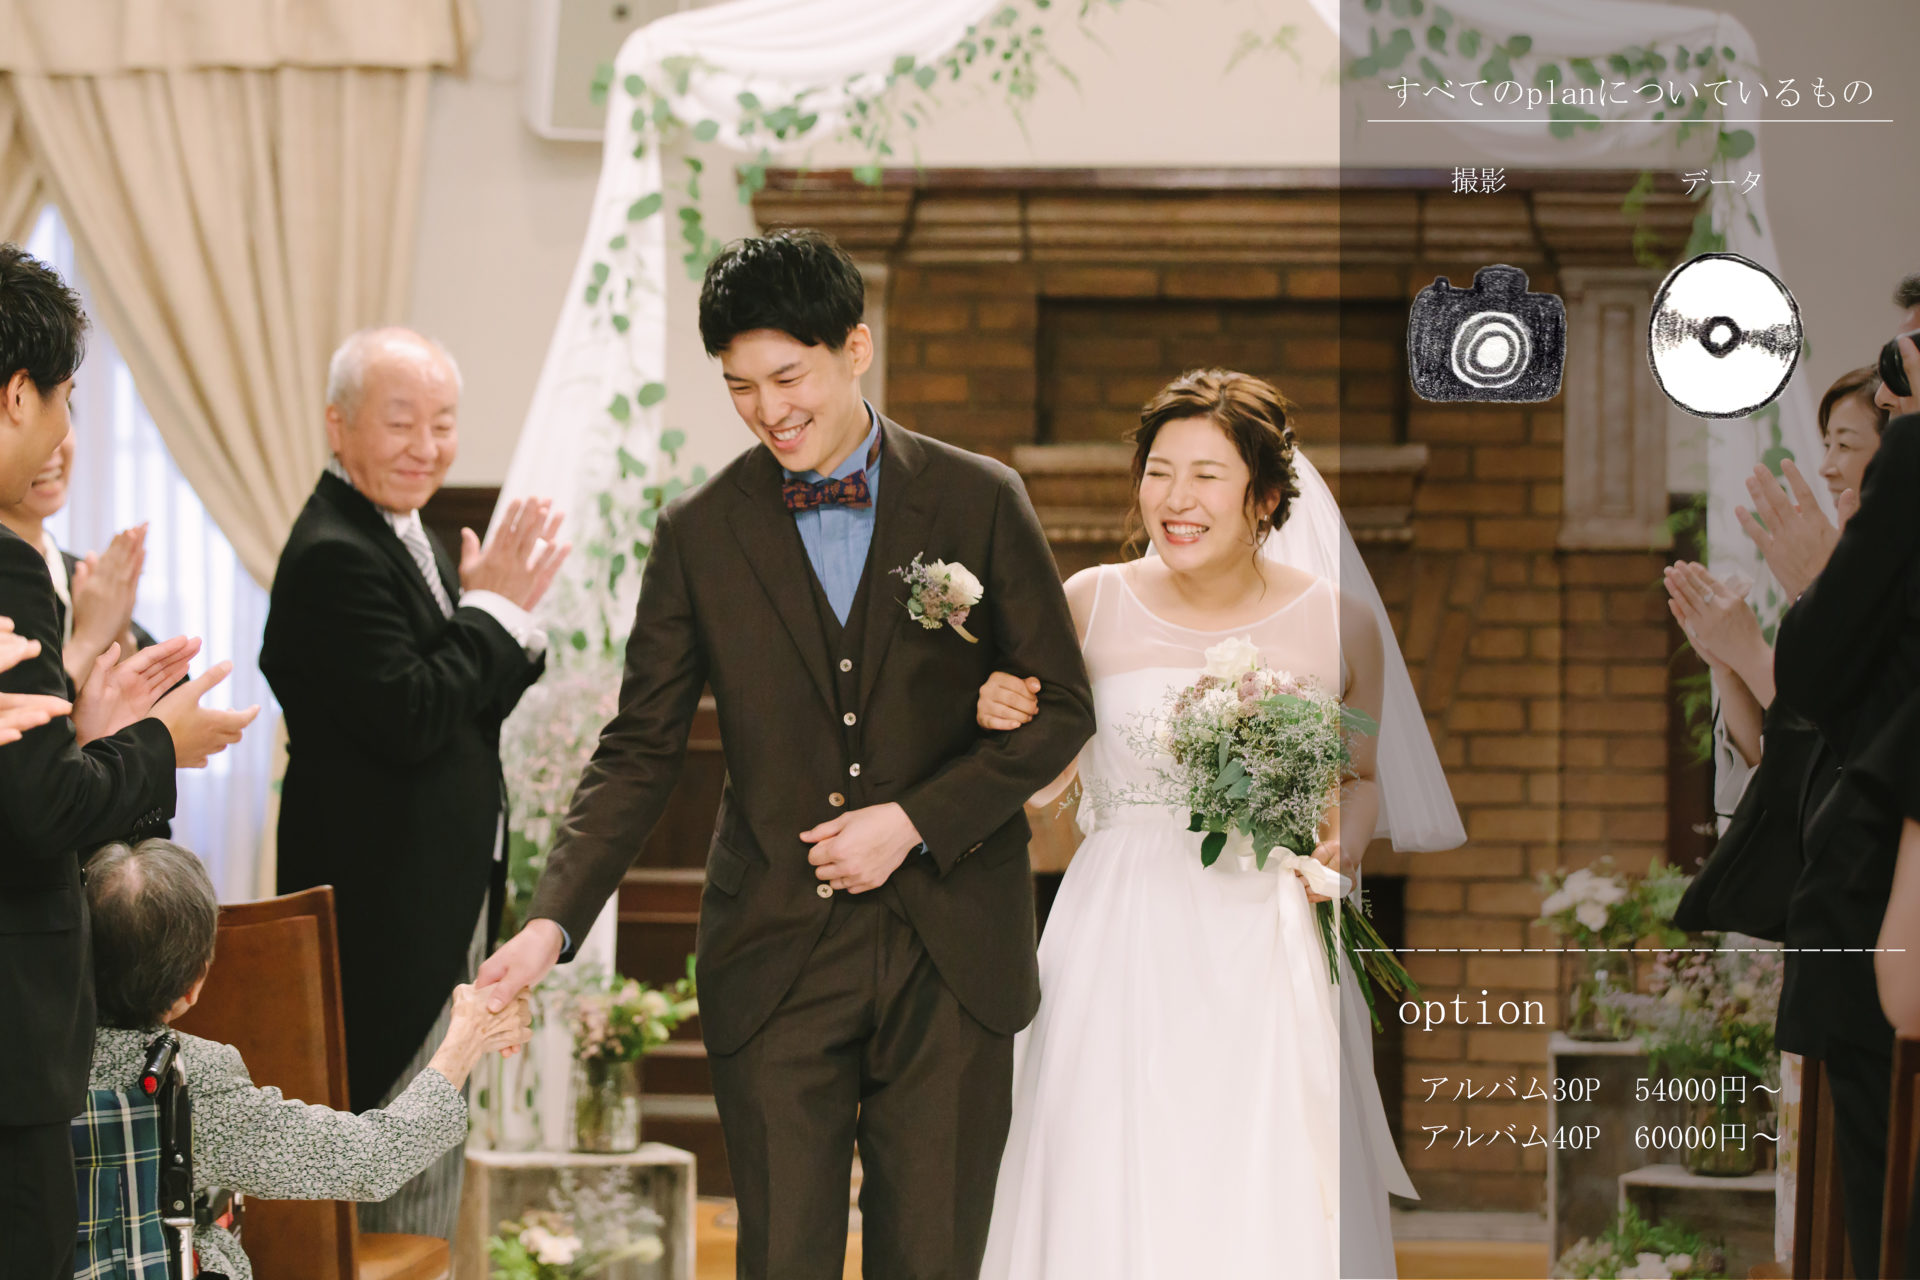 結婚式当日撮影 アオフォトグラフィ 和歌山でフォトウェディング 結婚式写真 和装前撮り撮影